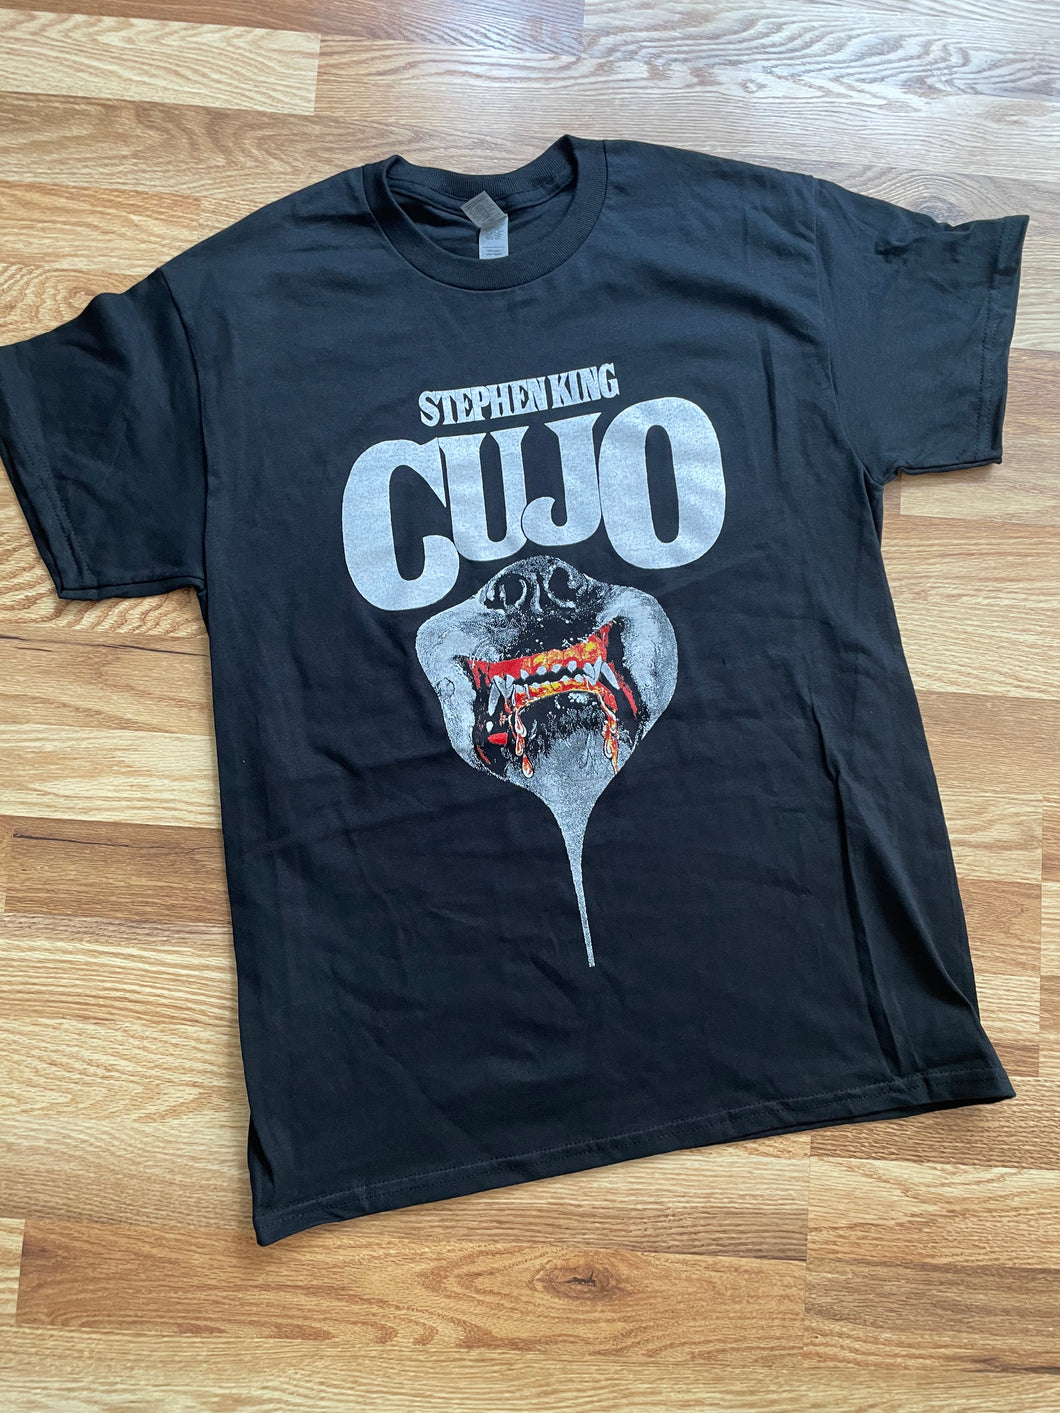 Cujo Shirt